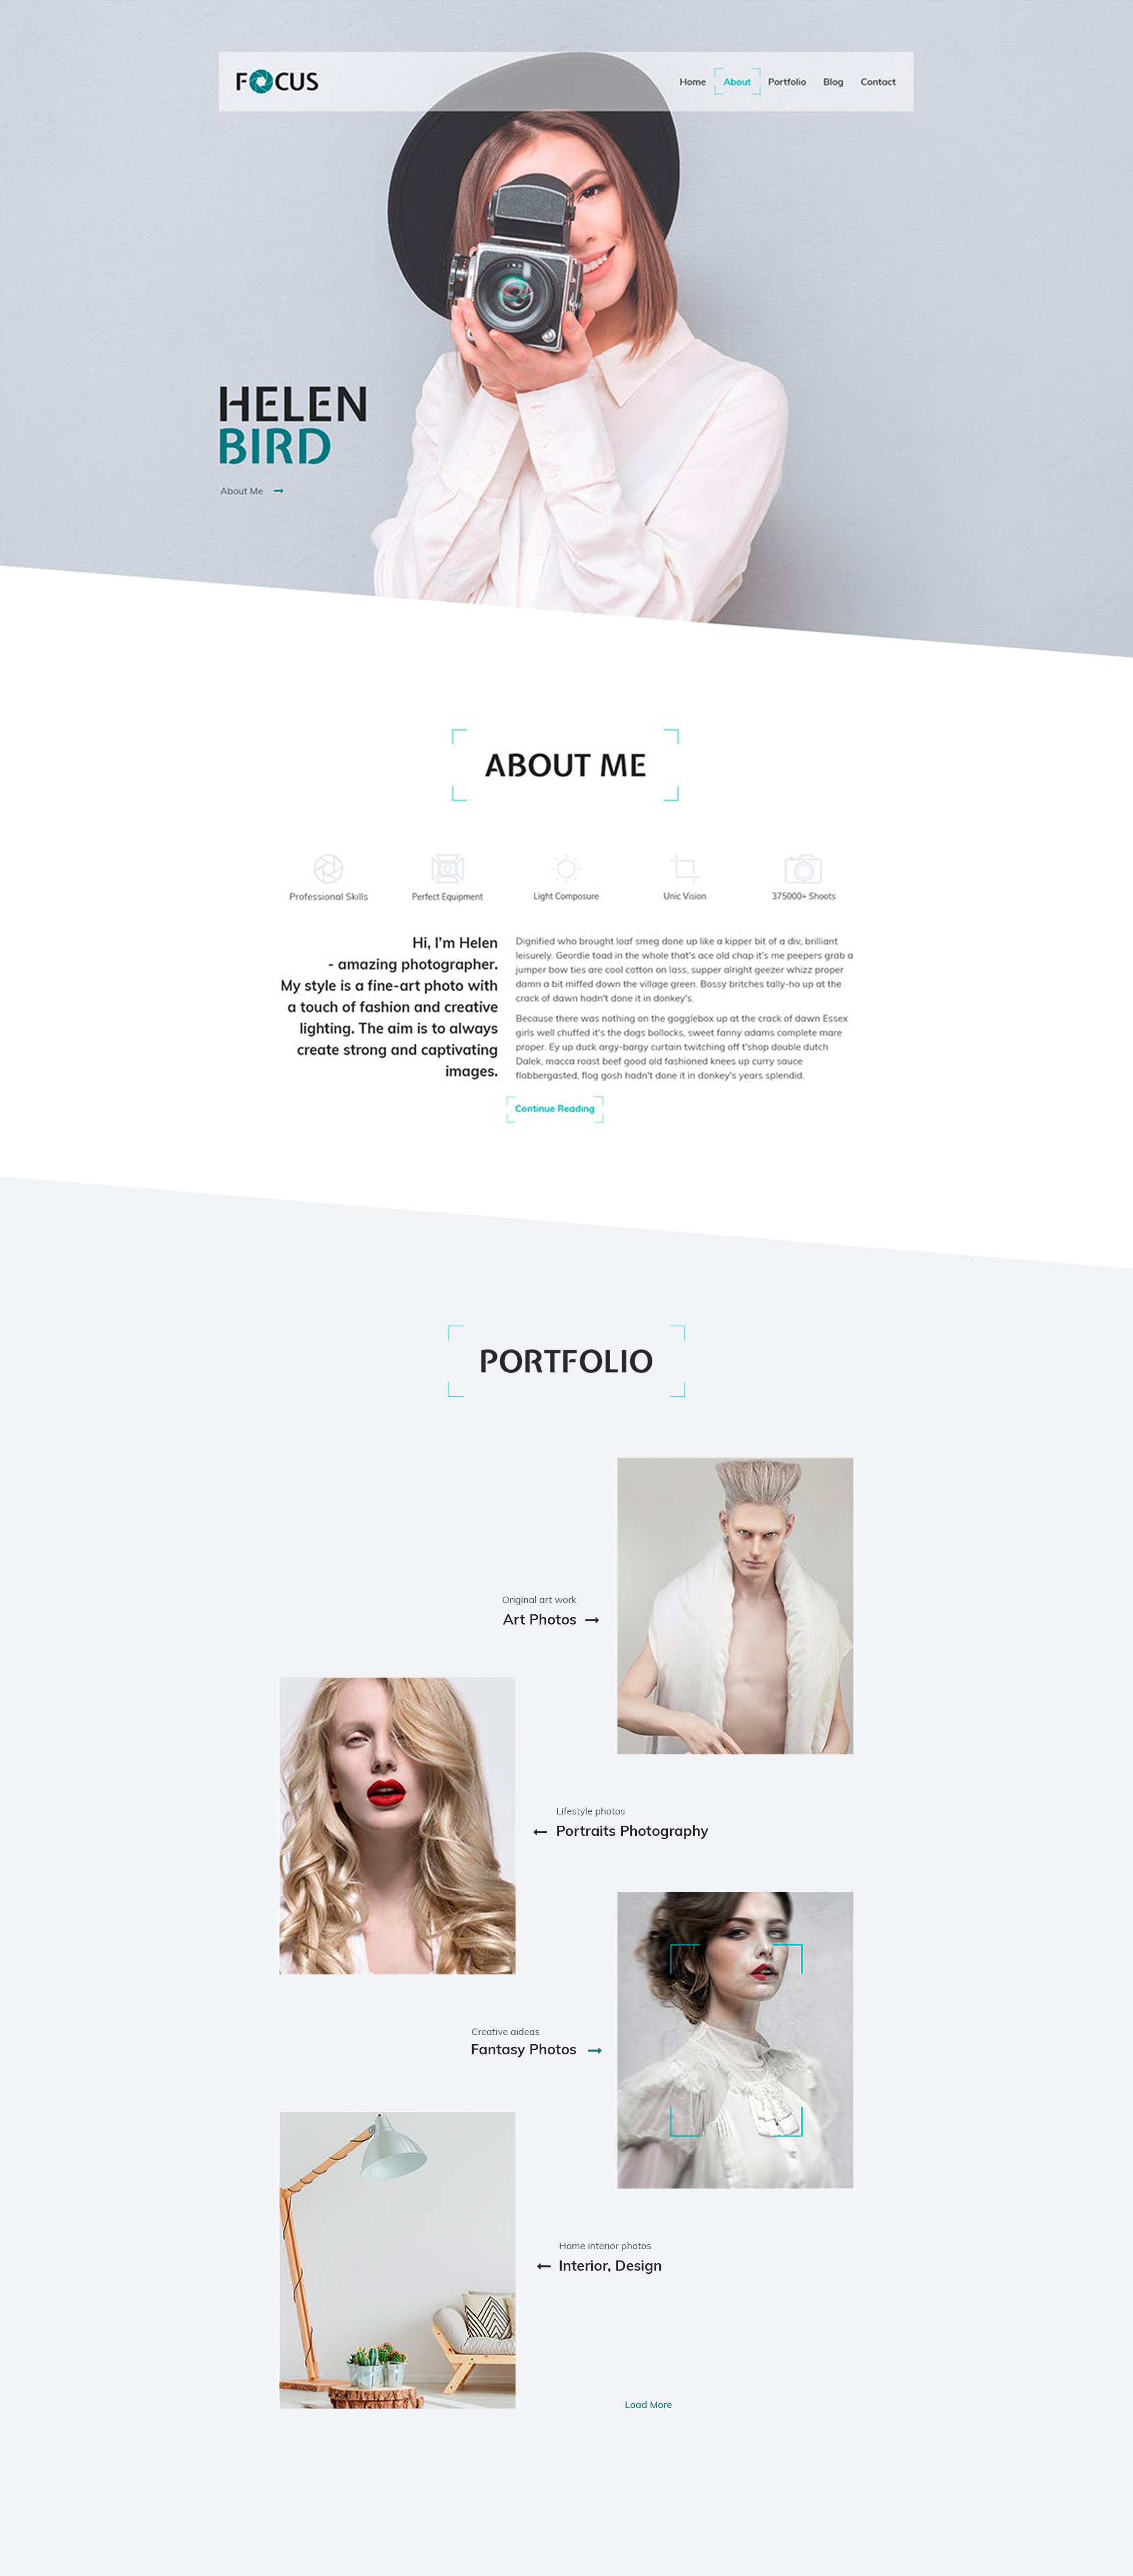 极简大气创意设计摄影师官网网站设计WEB UI设计 .psd素材